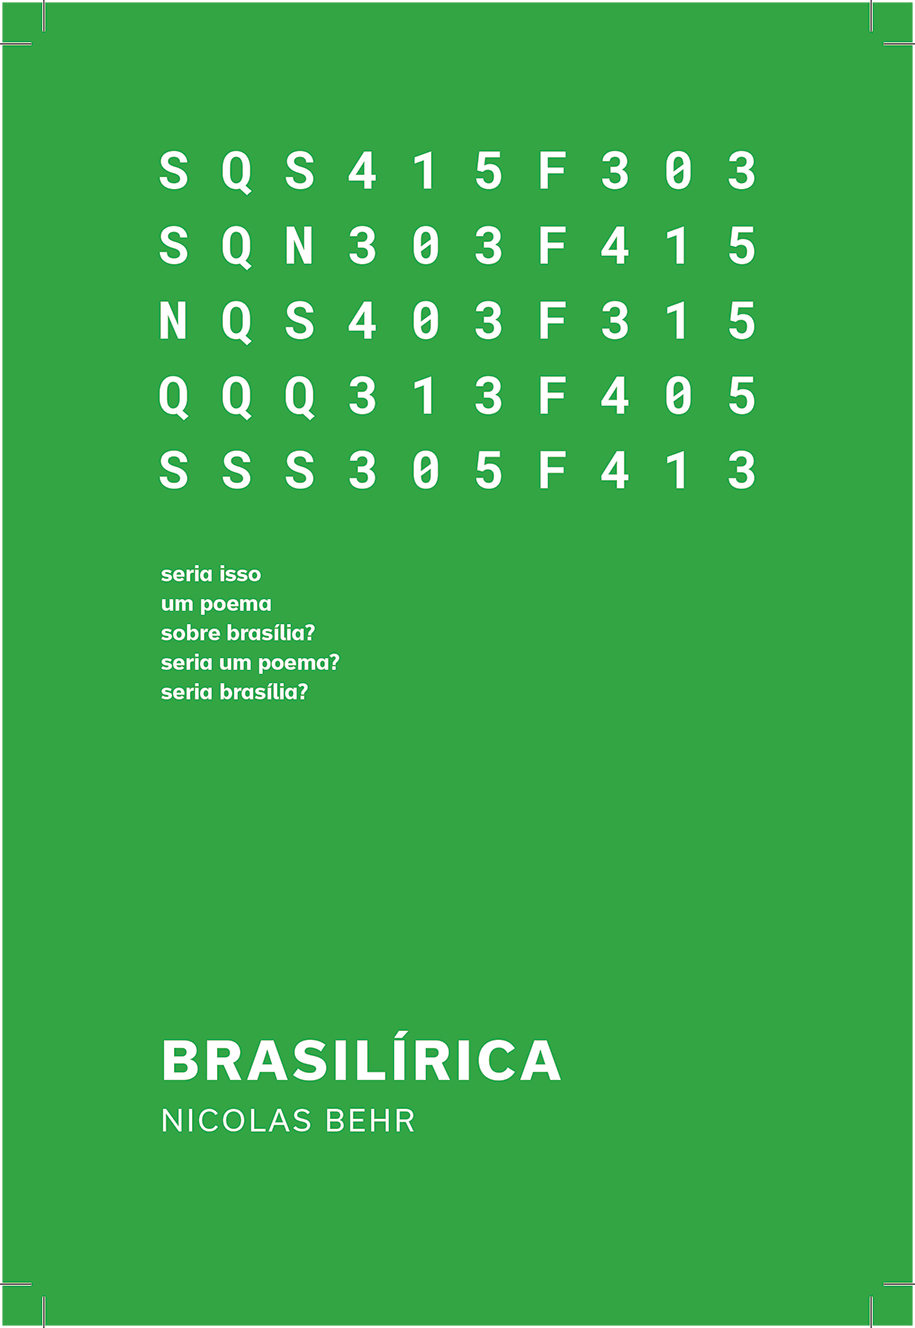 Capa Brasilírica